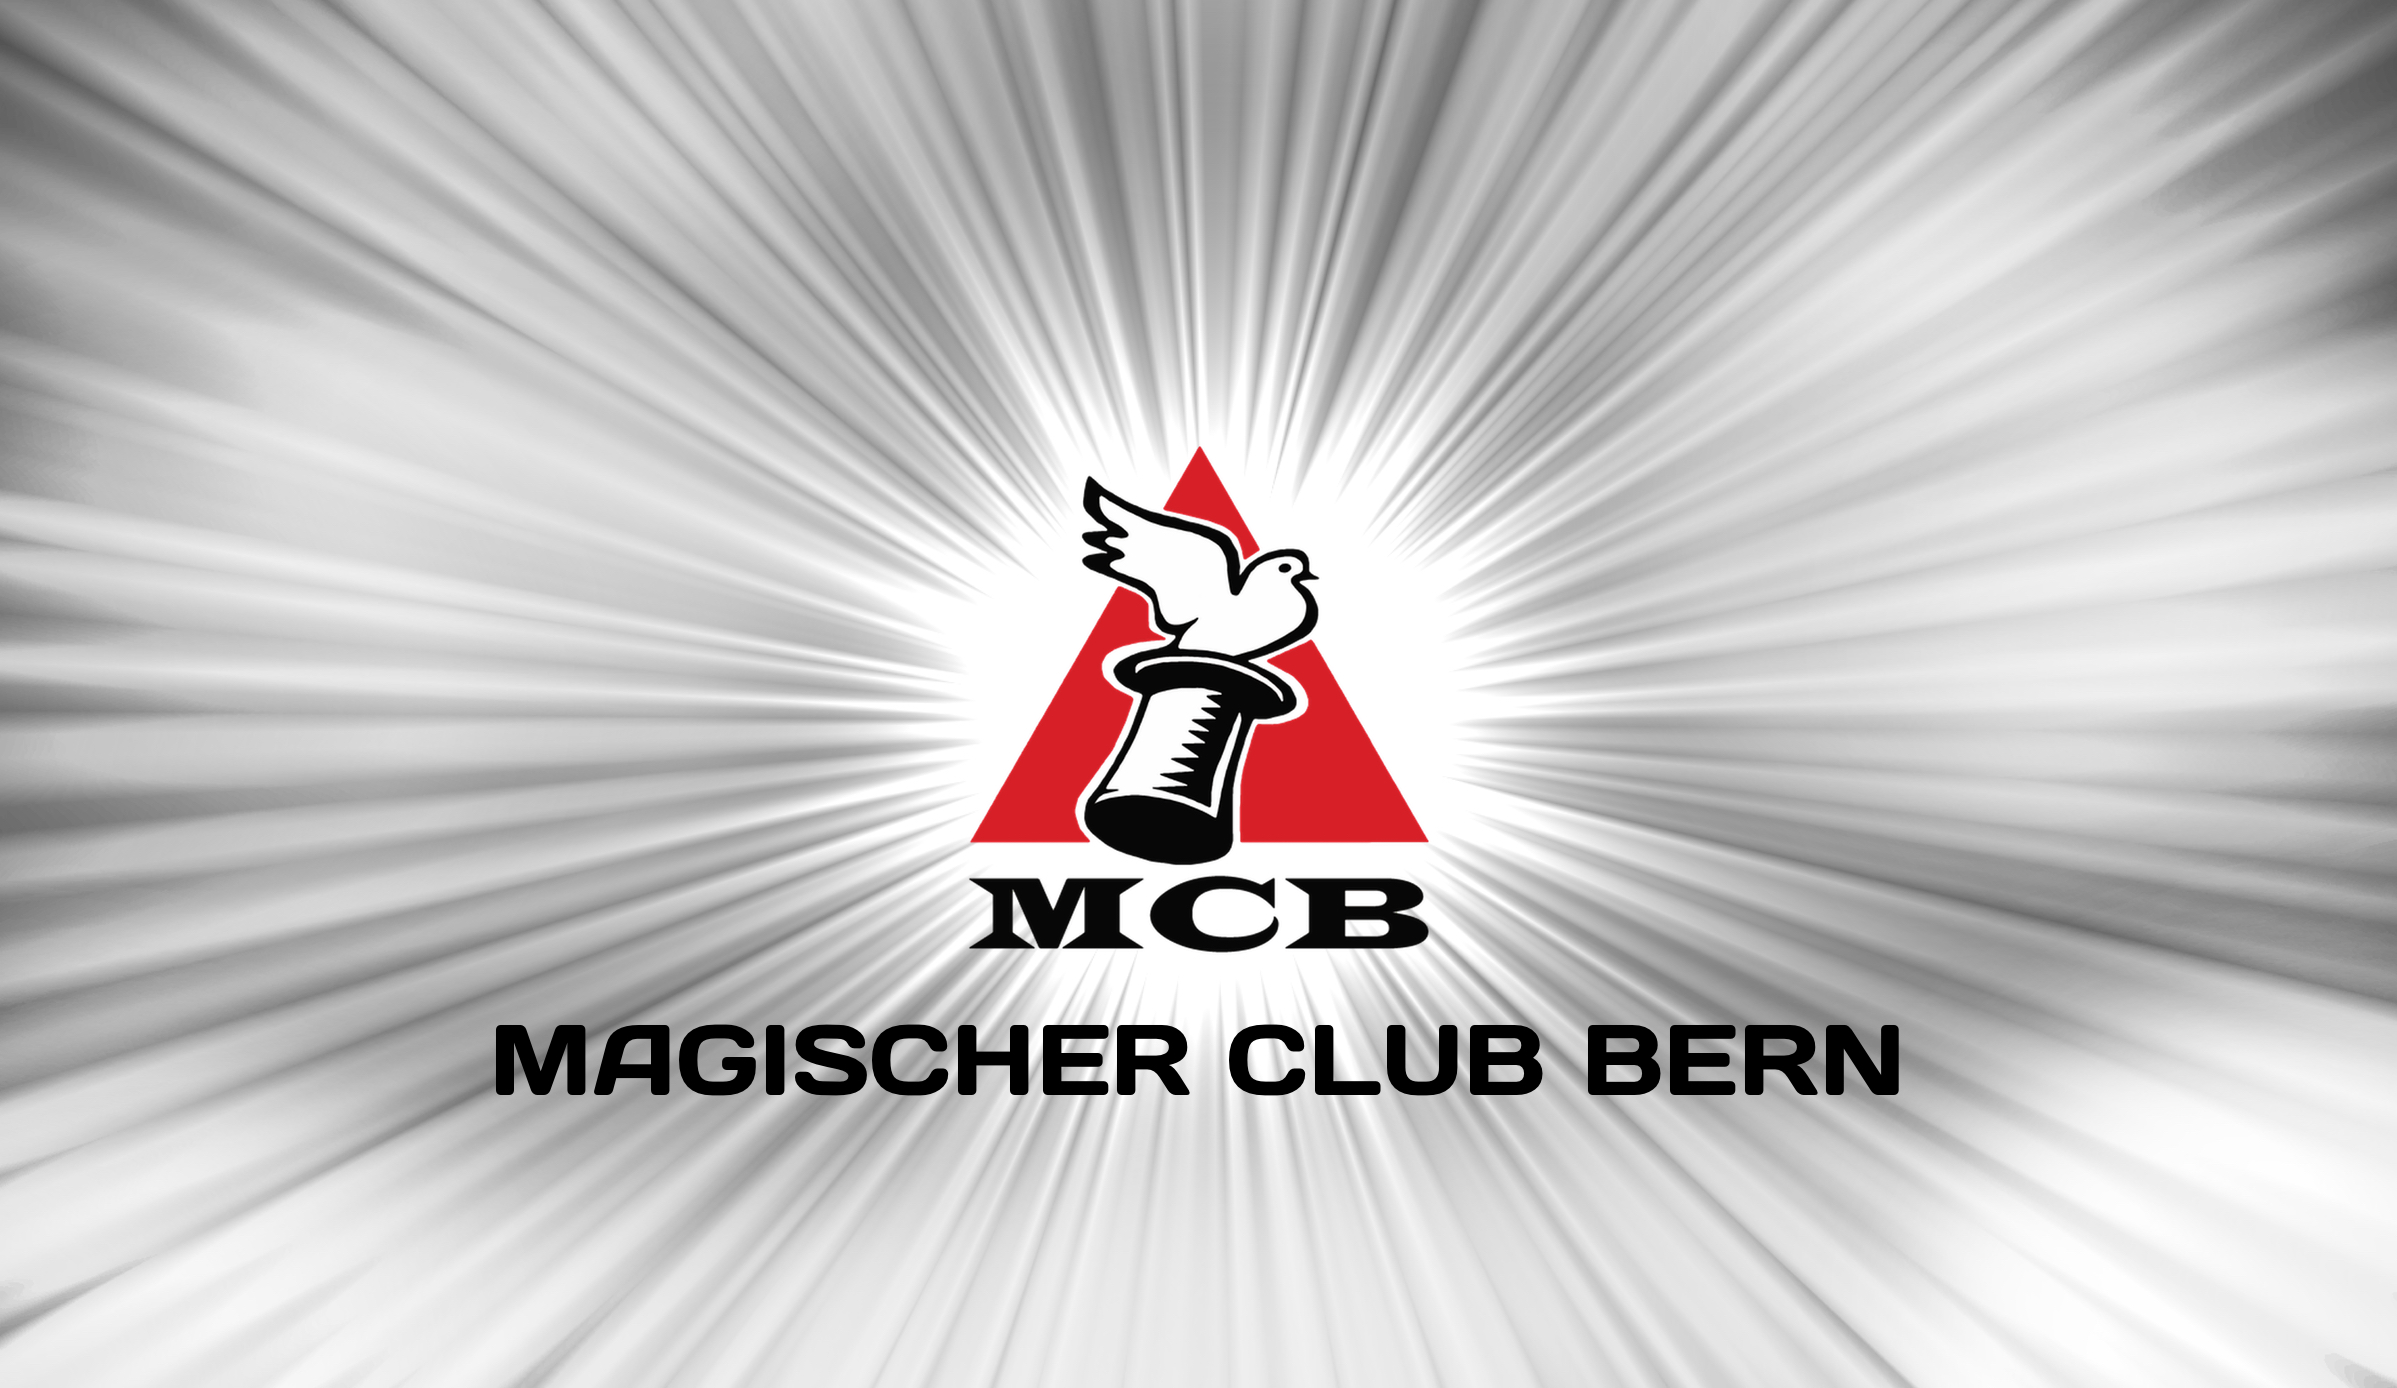 (c) Magischerclubbern.ch